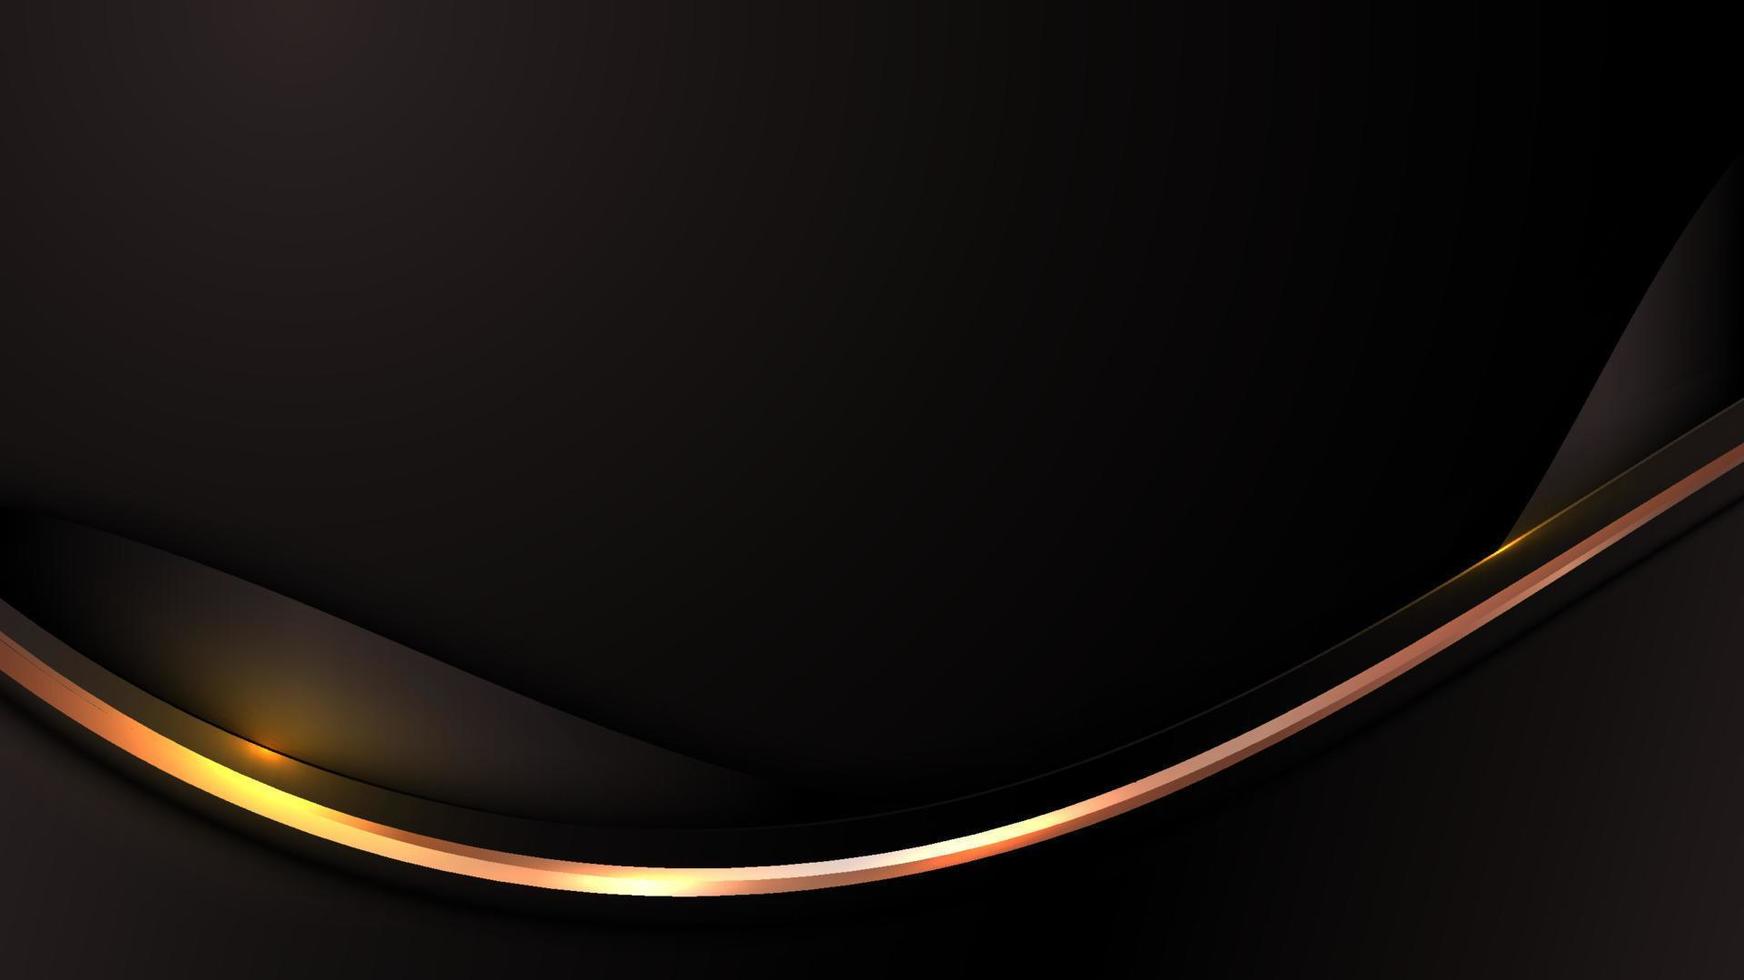 linhas de onda de cor preta de luxo 3d abstratas com decoração de linha curva dourada brilhante vetor